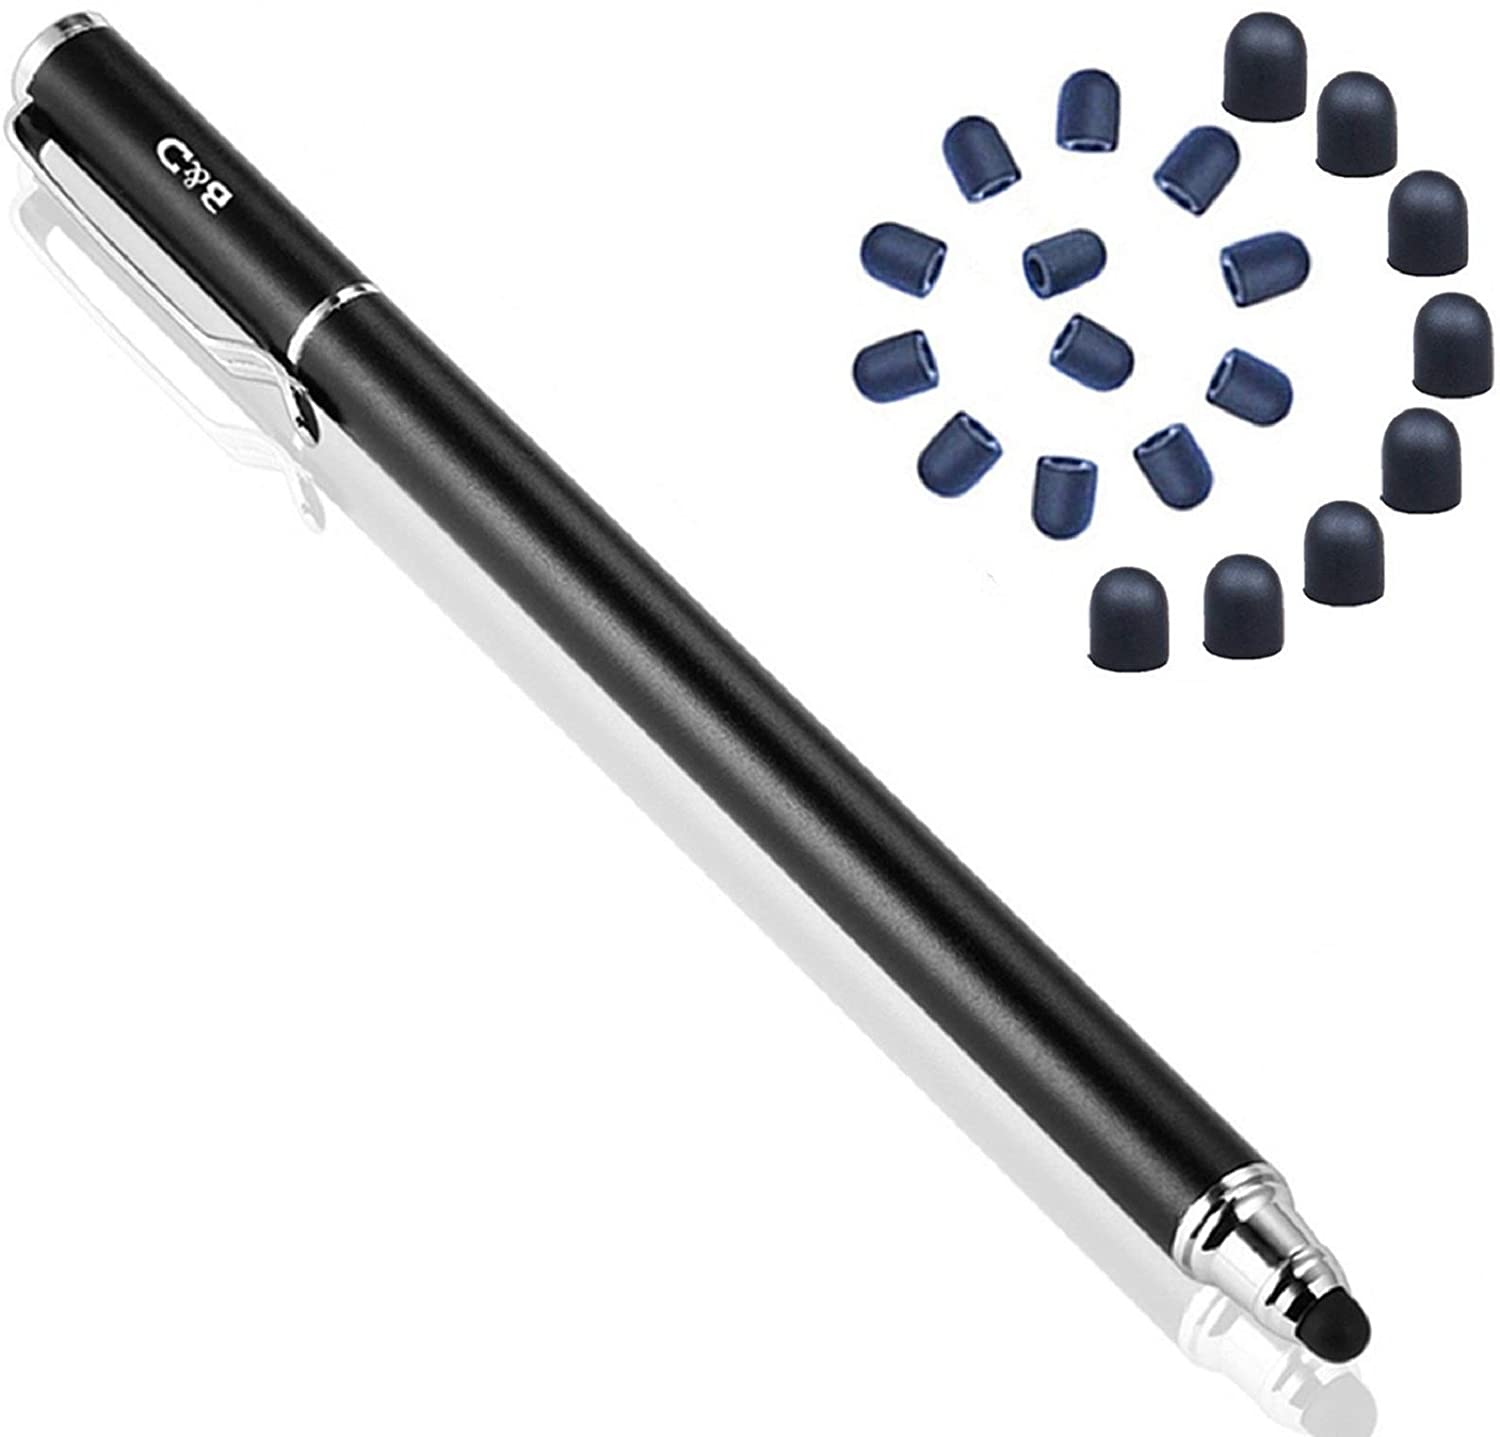 GENERICO Lápiz Pencil Táctil para Tablet Acer y Microlab más guante